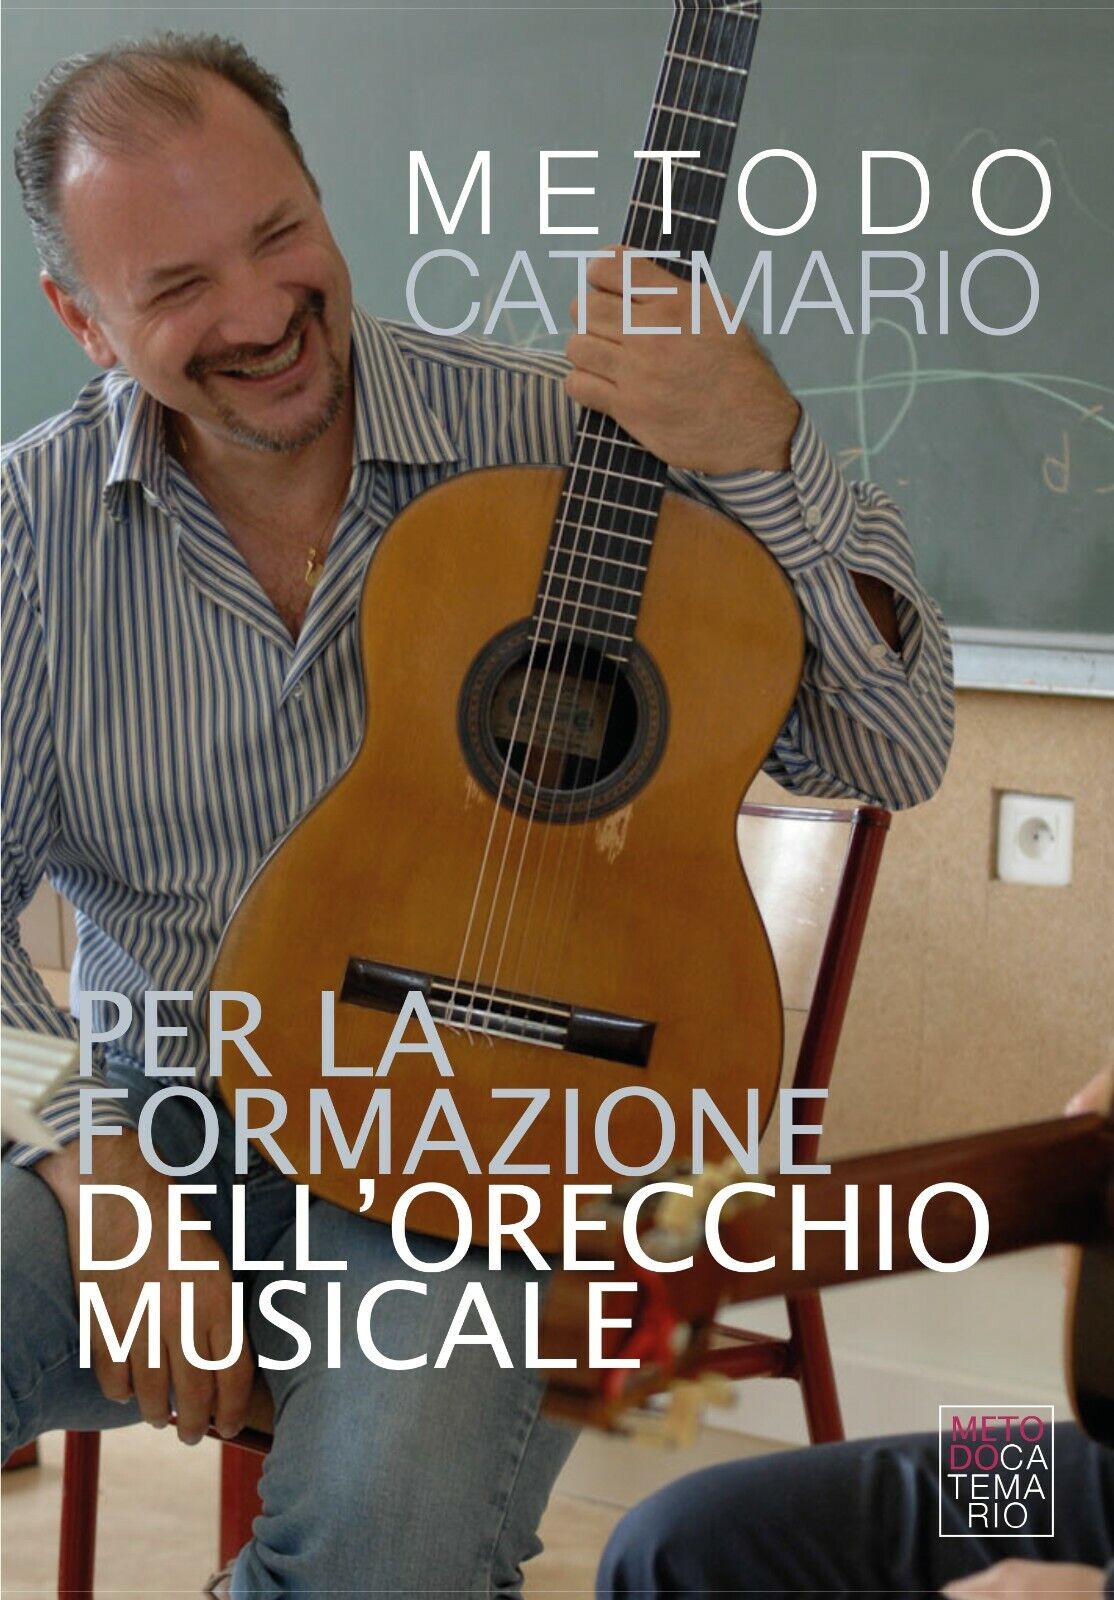 Metodo Catemario per la formazione delL'orecchio musicale di Edoardo Catemario, 